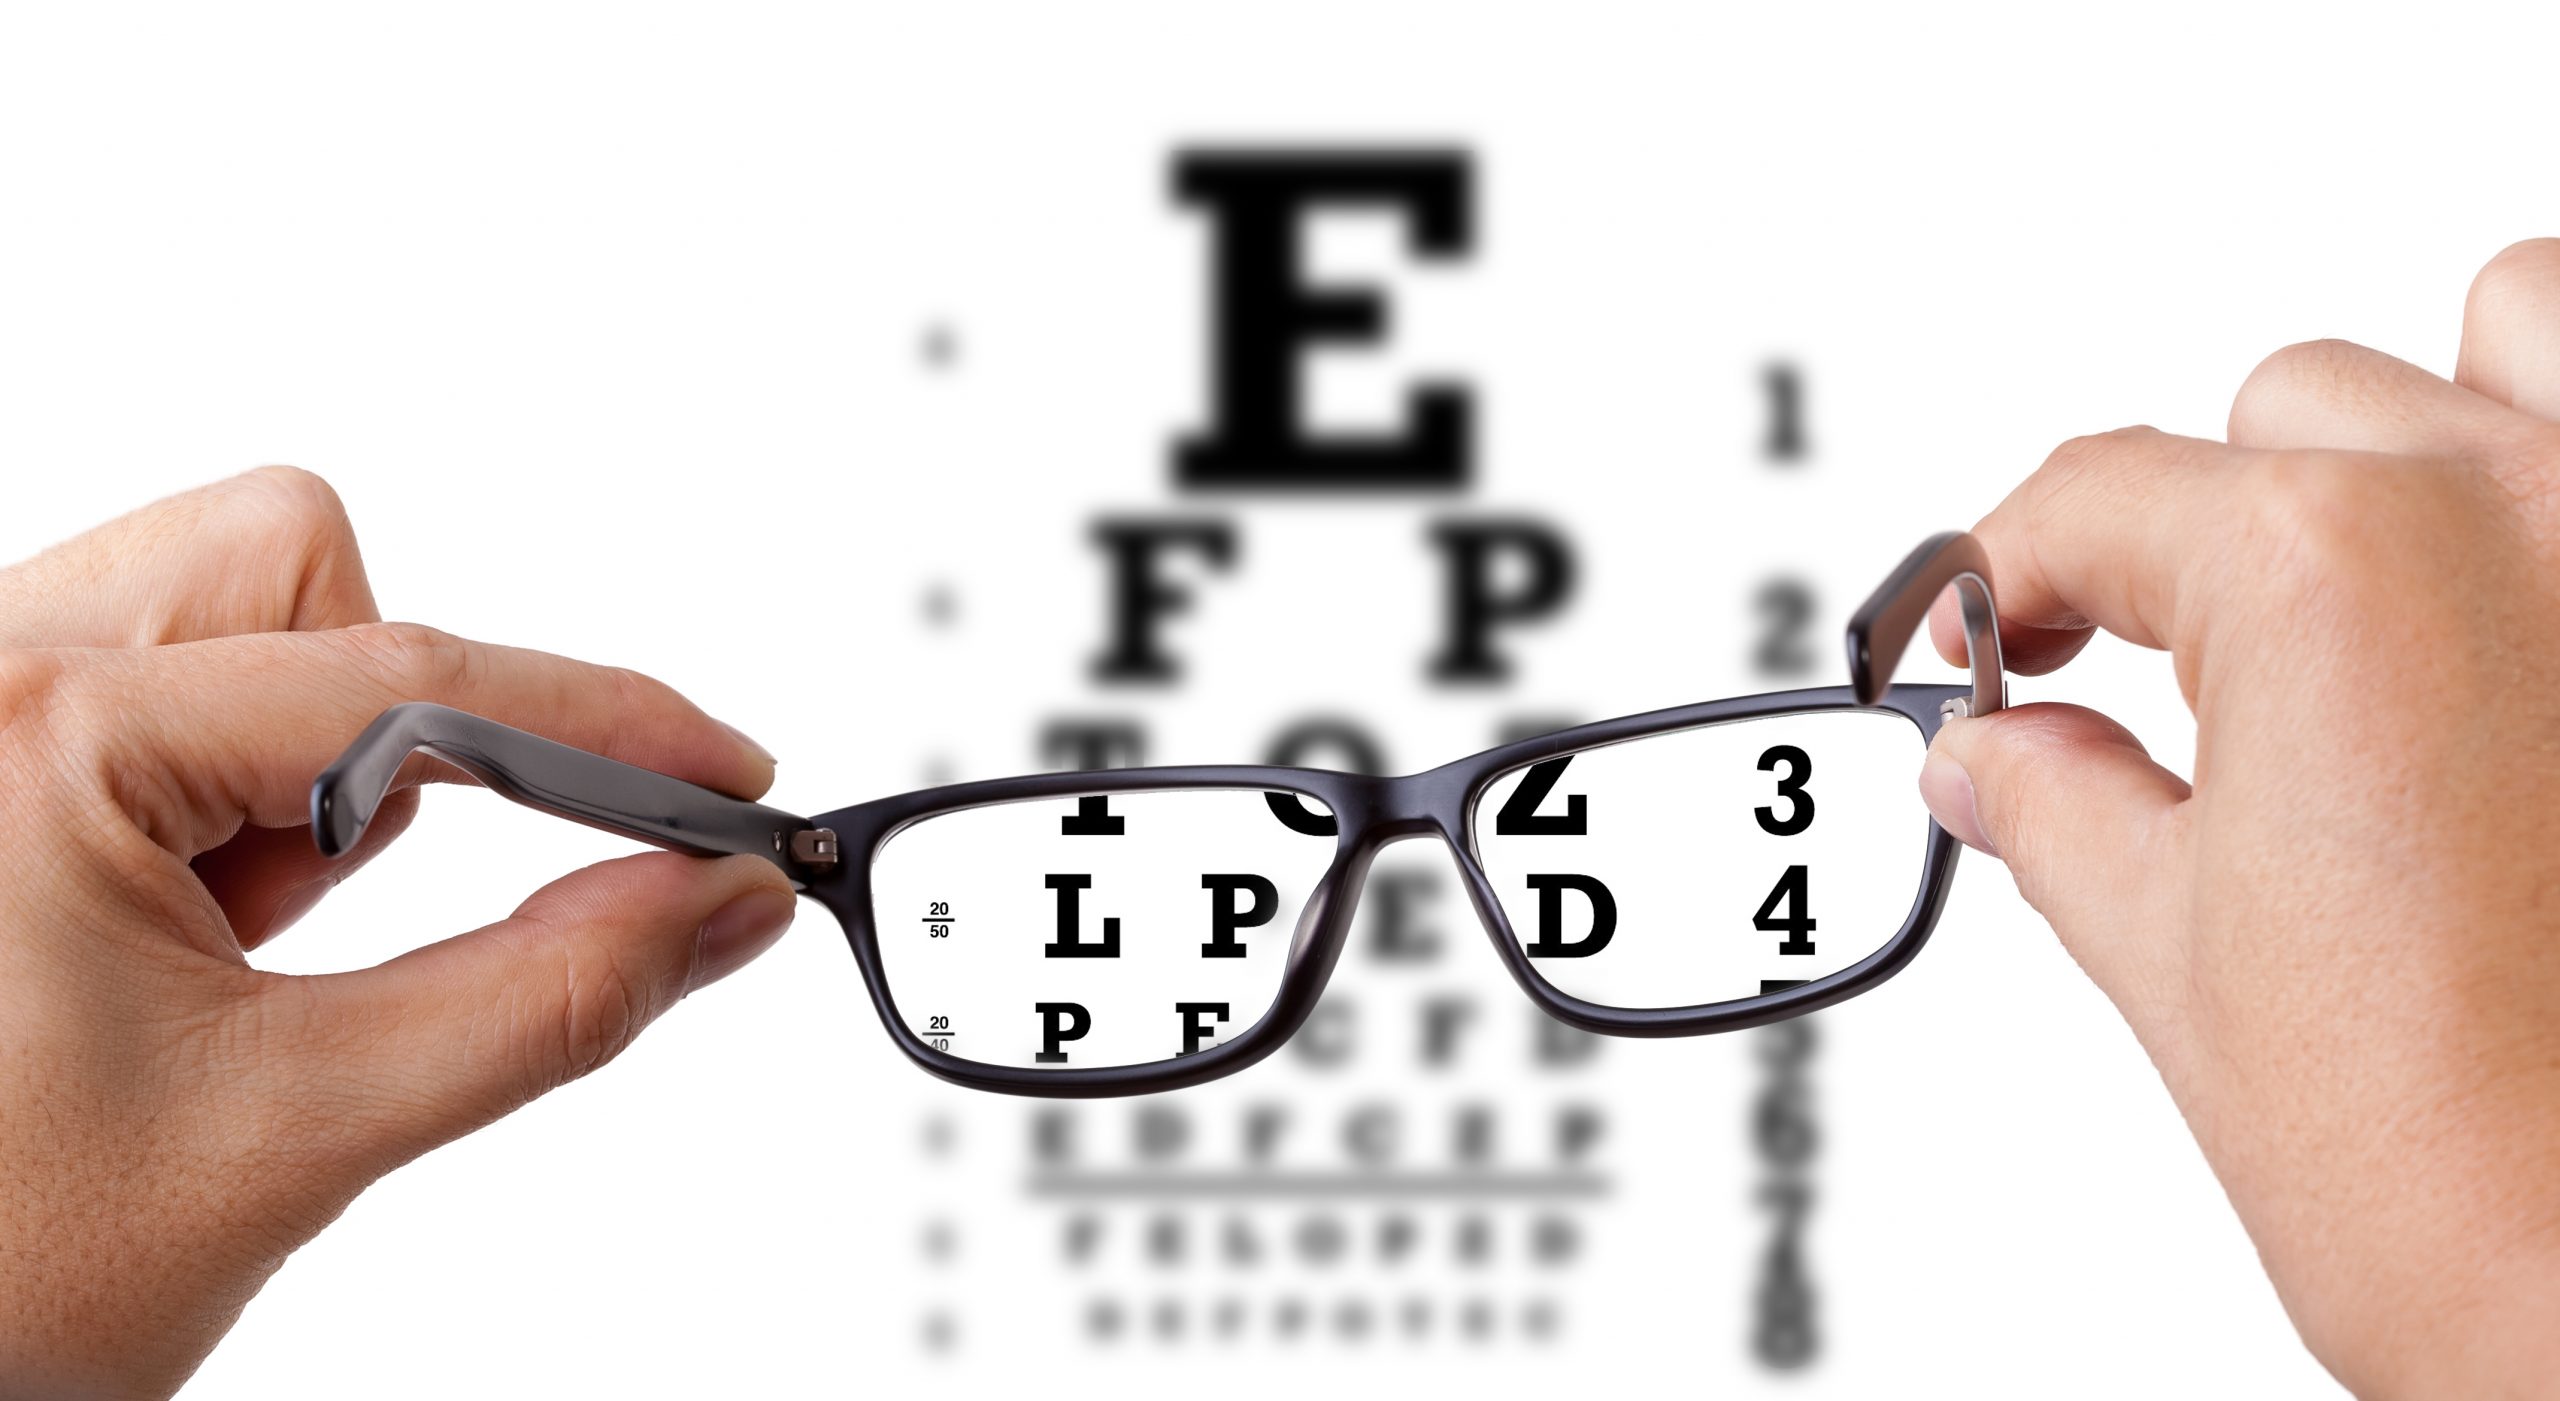 miopía y astigmatismo que es